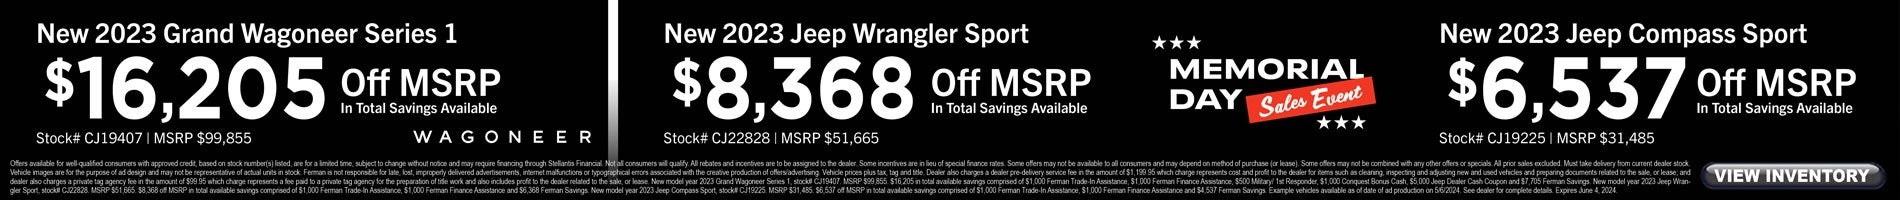 May Savings on New Grand Wagoneer & Jeep Wrangler, Compass